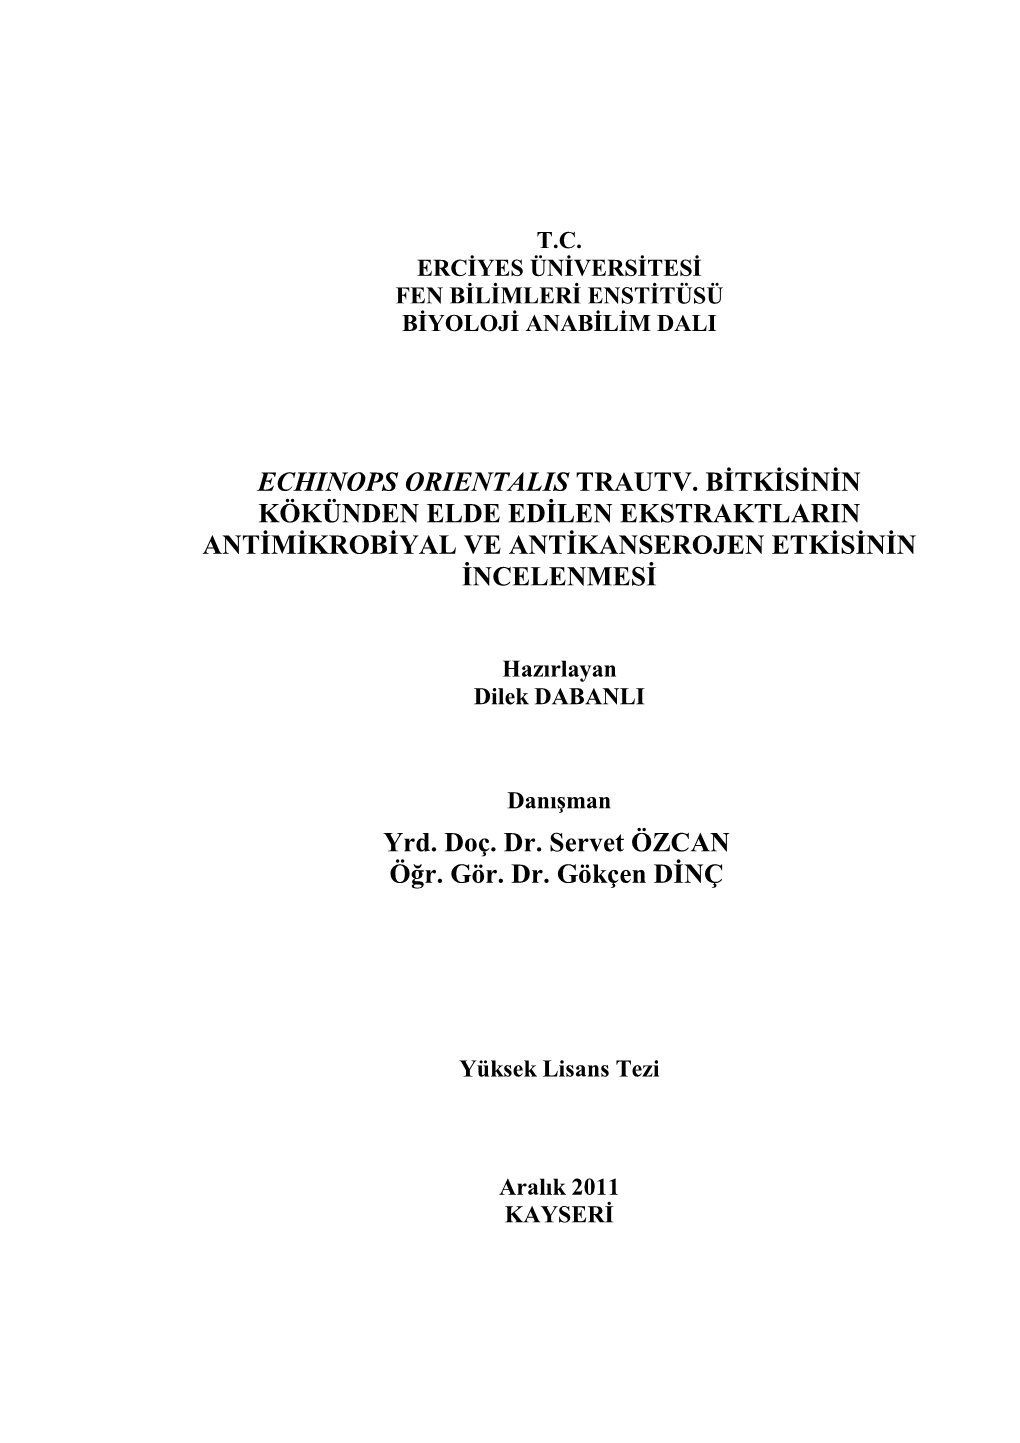 Echinops Orientalis Trautv. Bitkisinin Kökünden Elde Edilen Ekstraktlarin Antimikrobiyal Ve Antikanserojen Etkisin